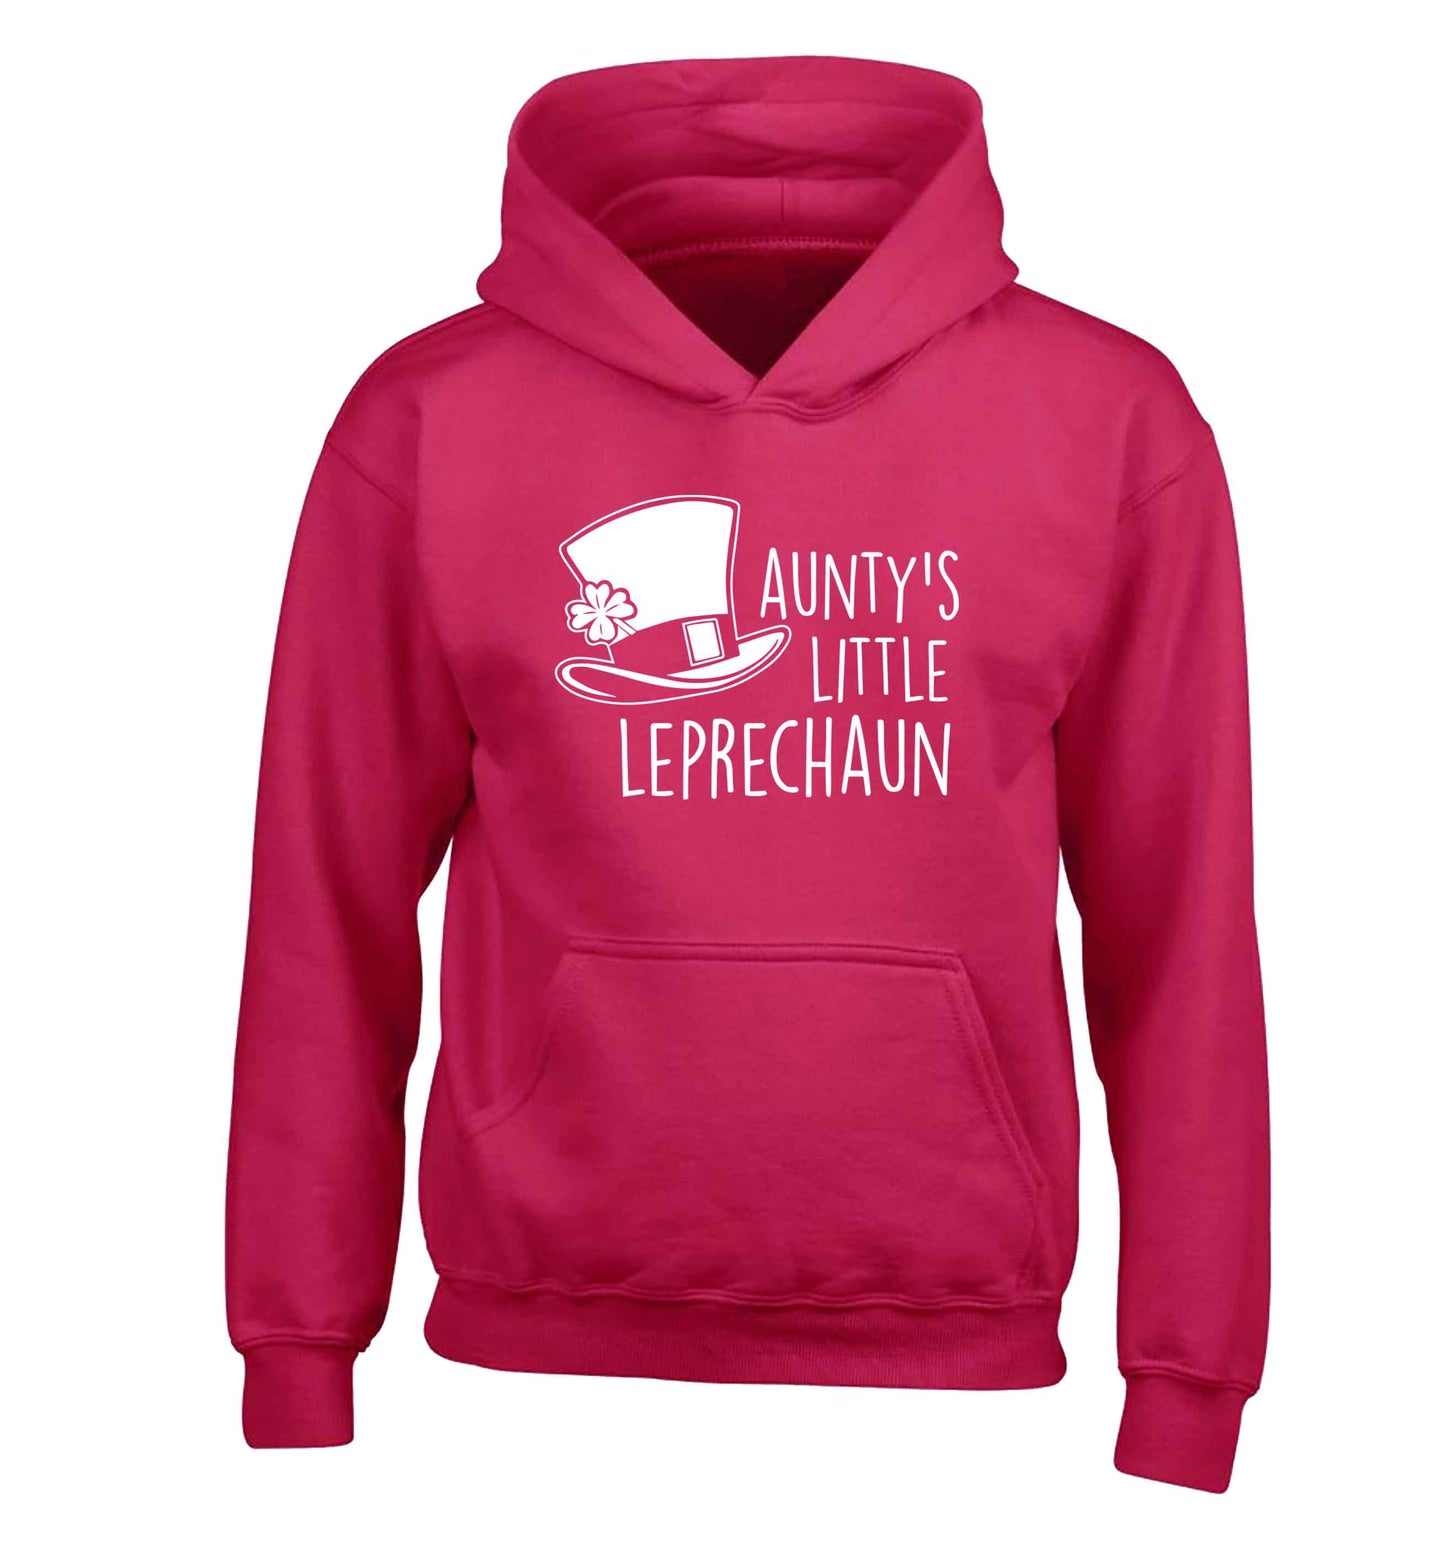 Aunty's little leprechaun children's pink hoodie 12-13 Years